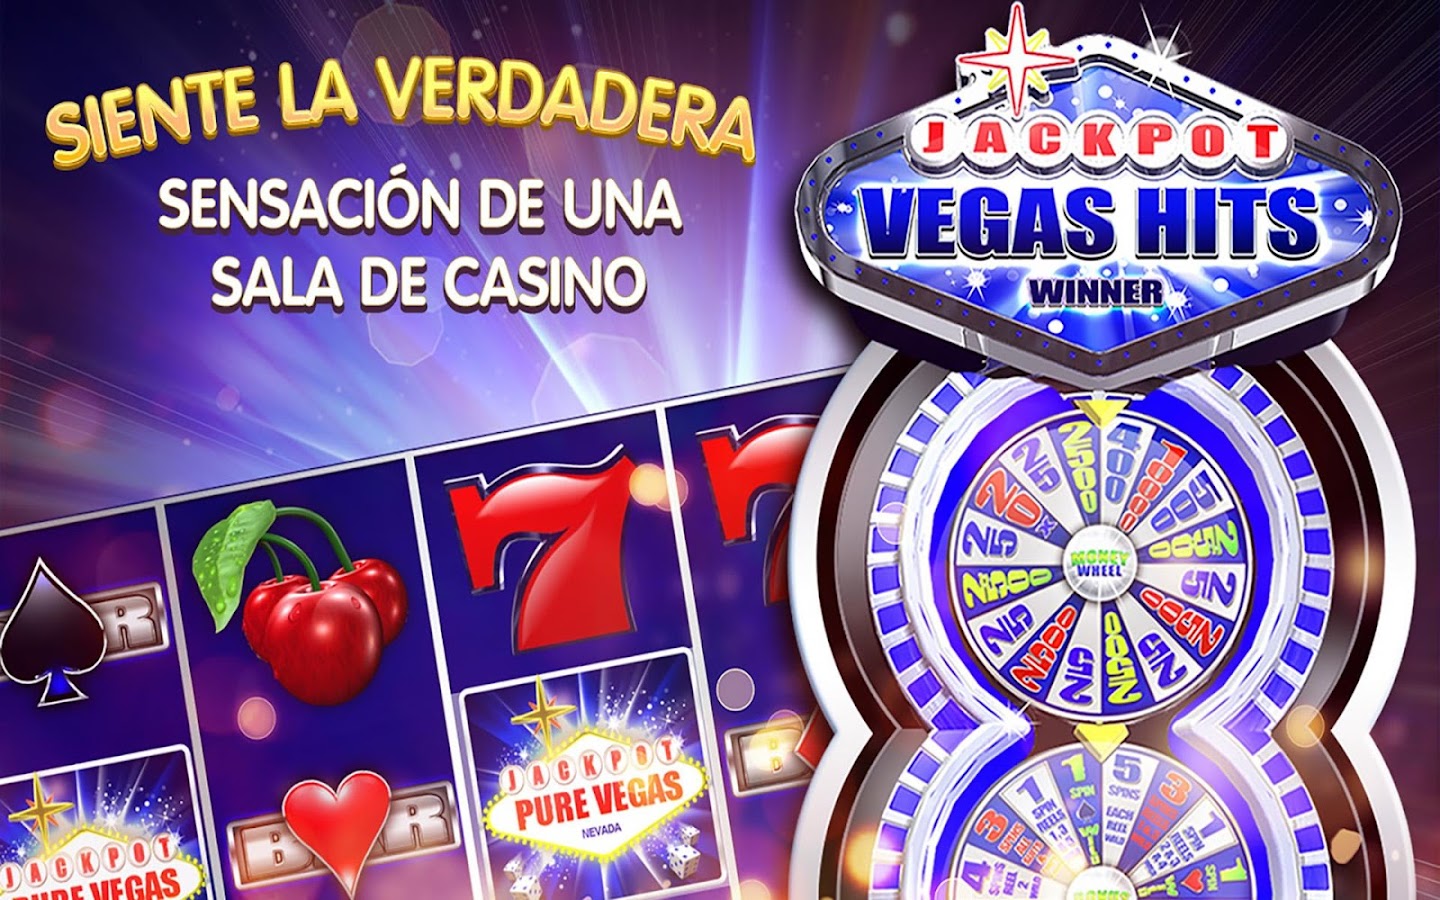 Technologies casino juego de mas facil de ganar - 15653